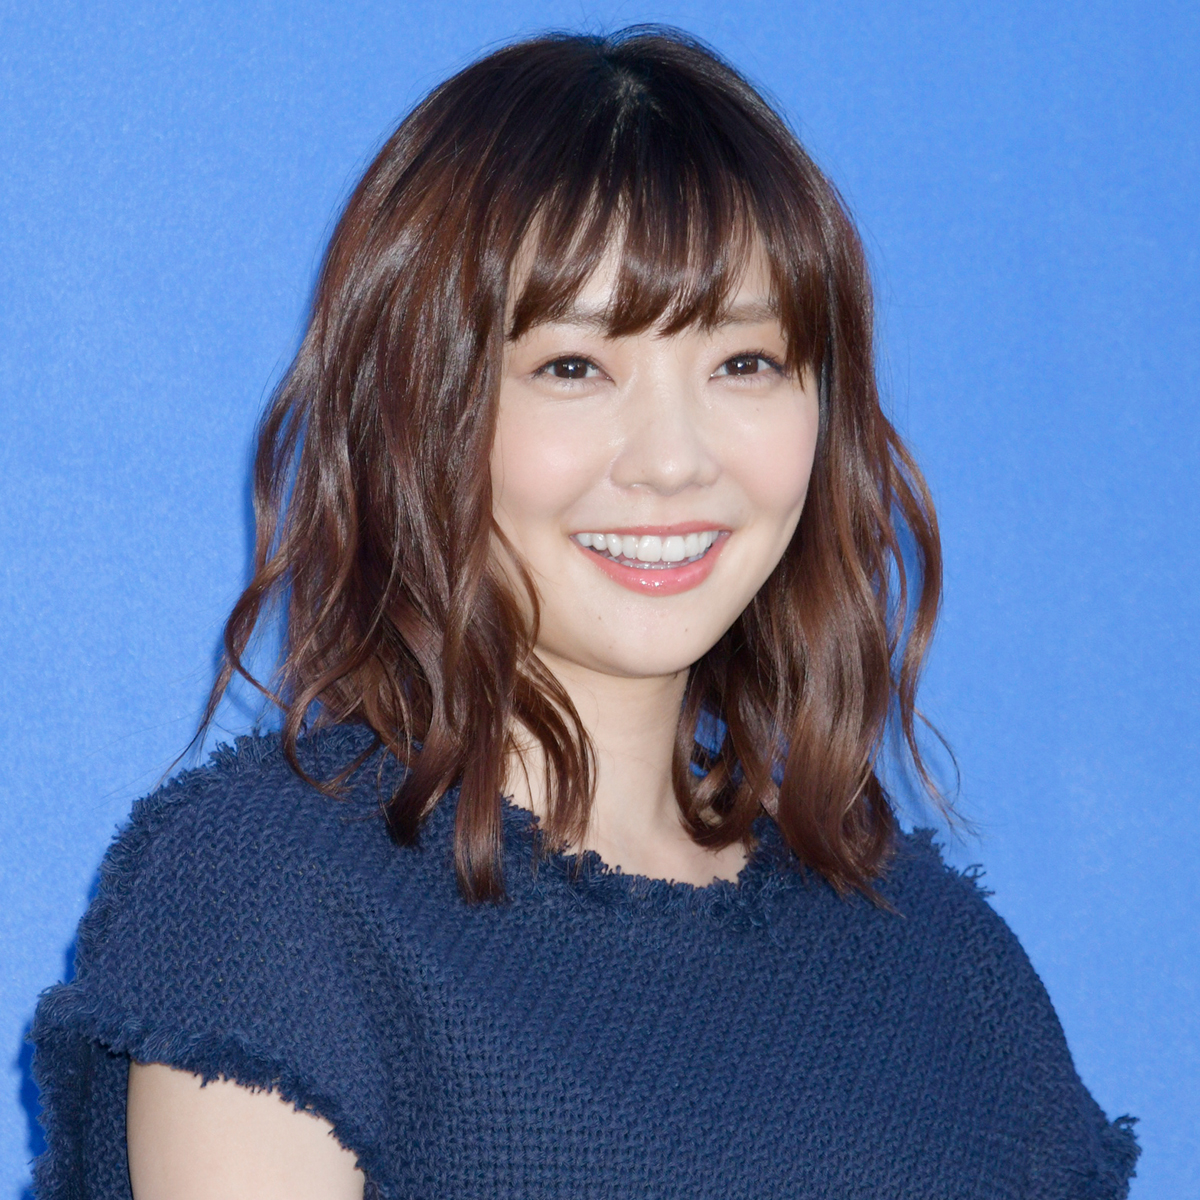 倉科カナの 今期ナンバー1バスト揺れ女優 と称された映像にファン悶絶 アサ芸プラス